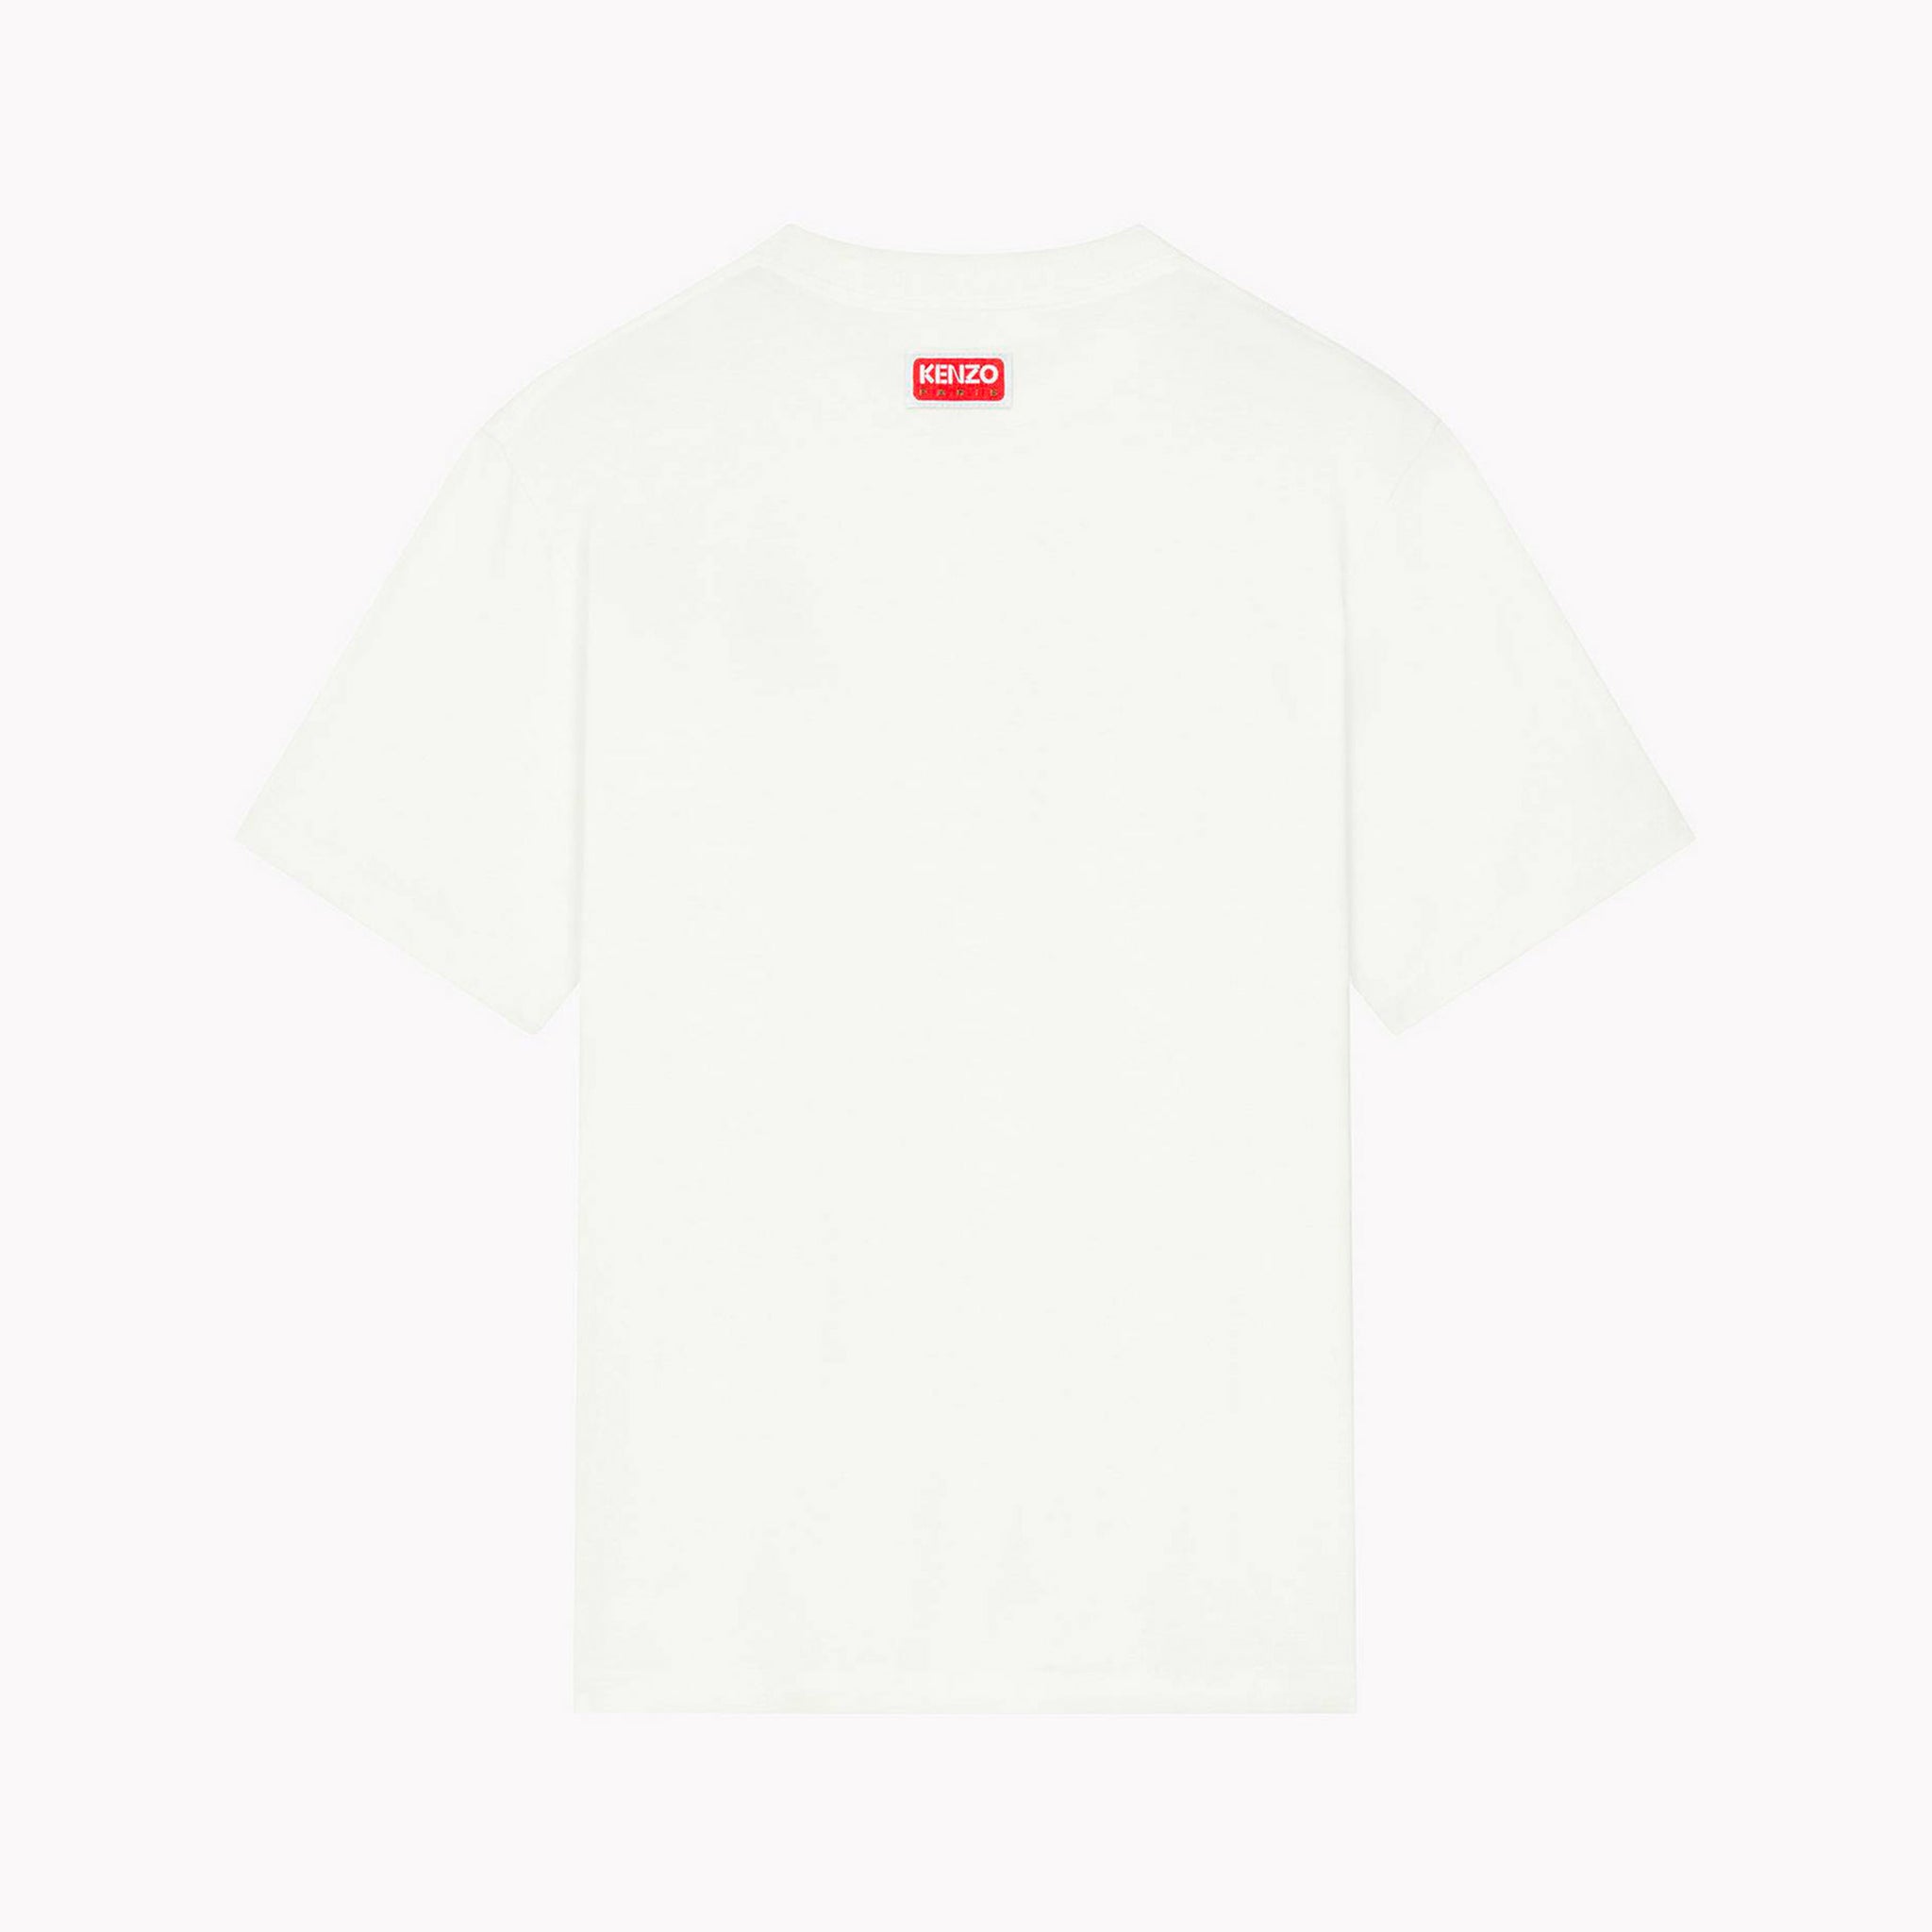 T-shirt Kenzo Elephant Blanc